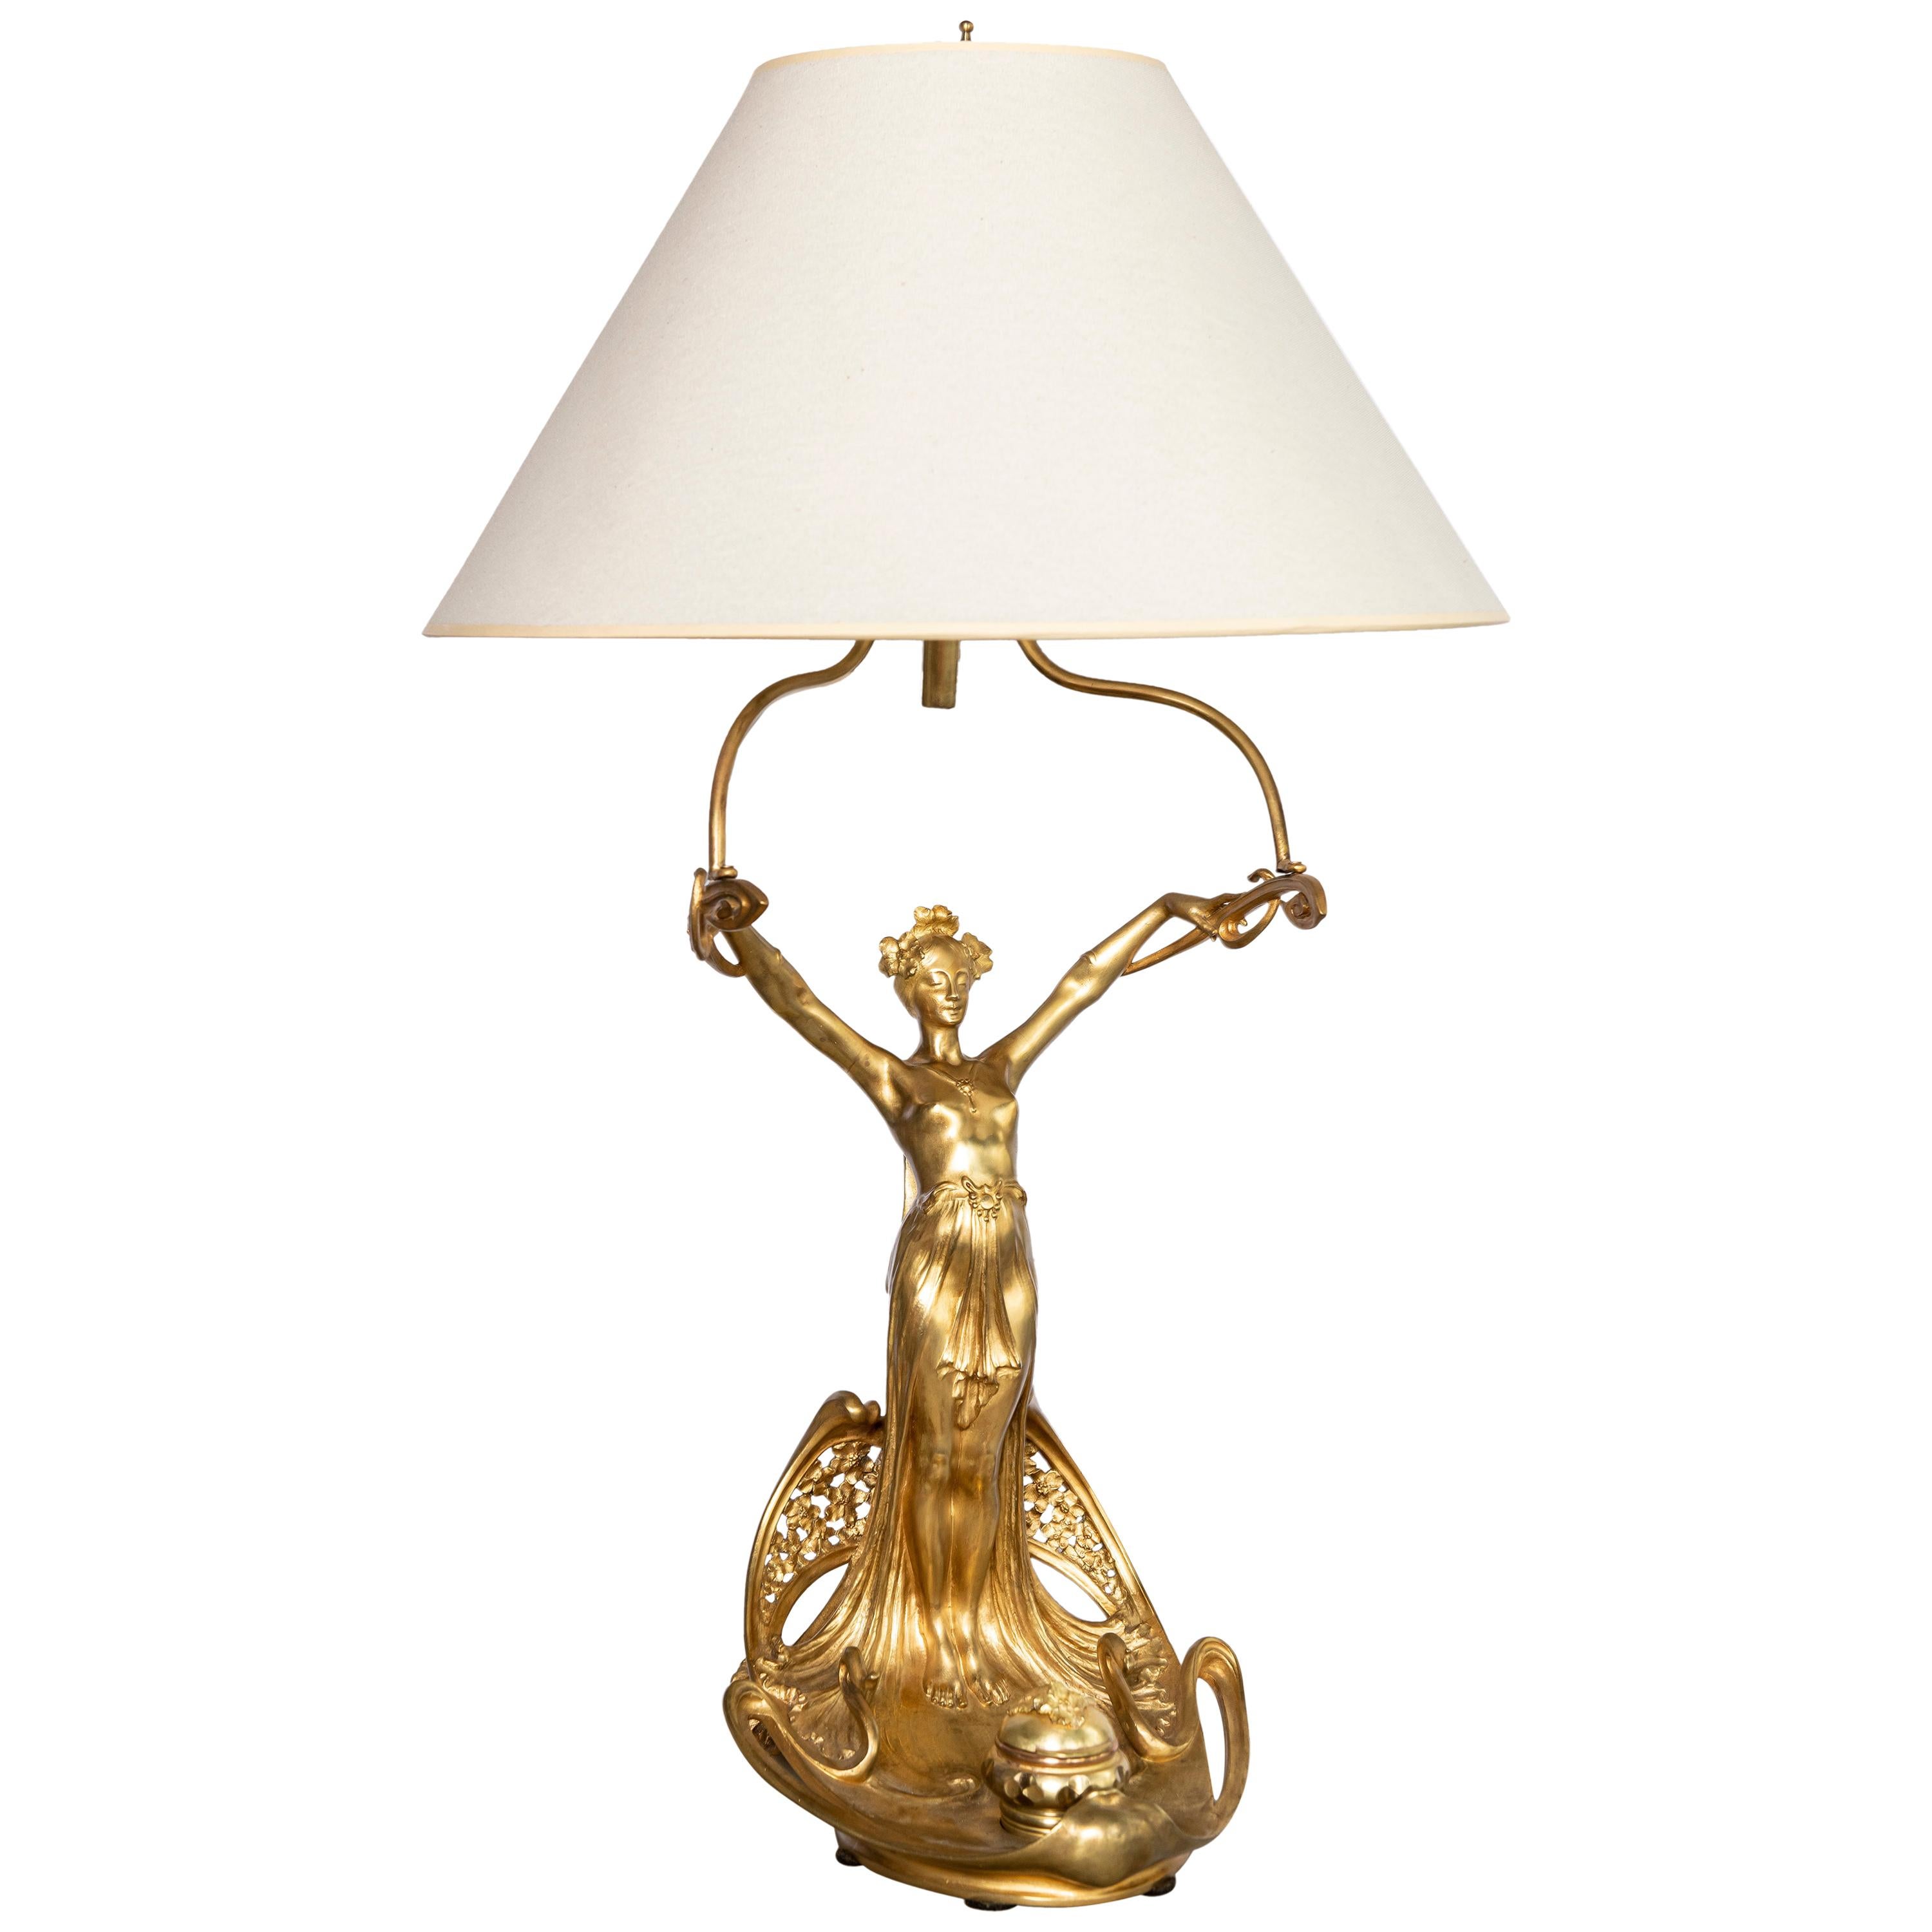 Lampe encrier en bronze doré signée A. Féry:: période Art Nouveau. France:: vers 1890